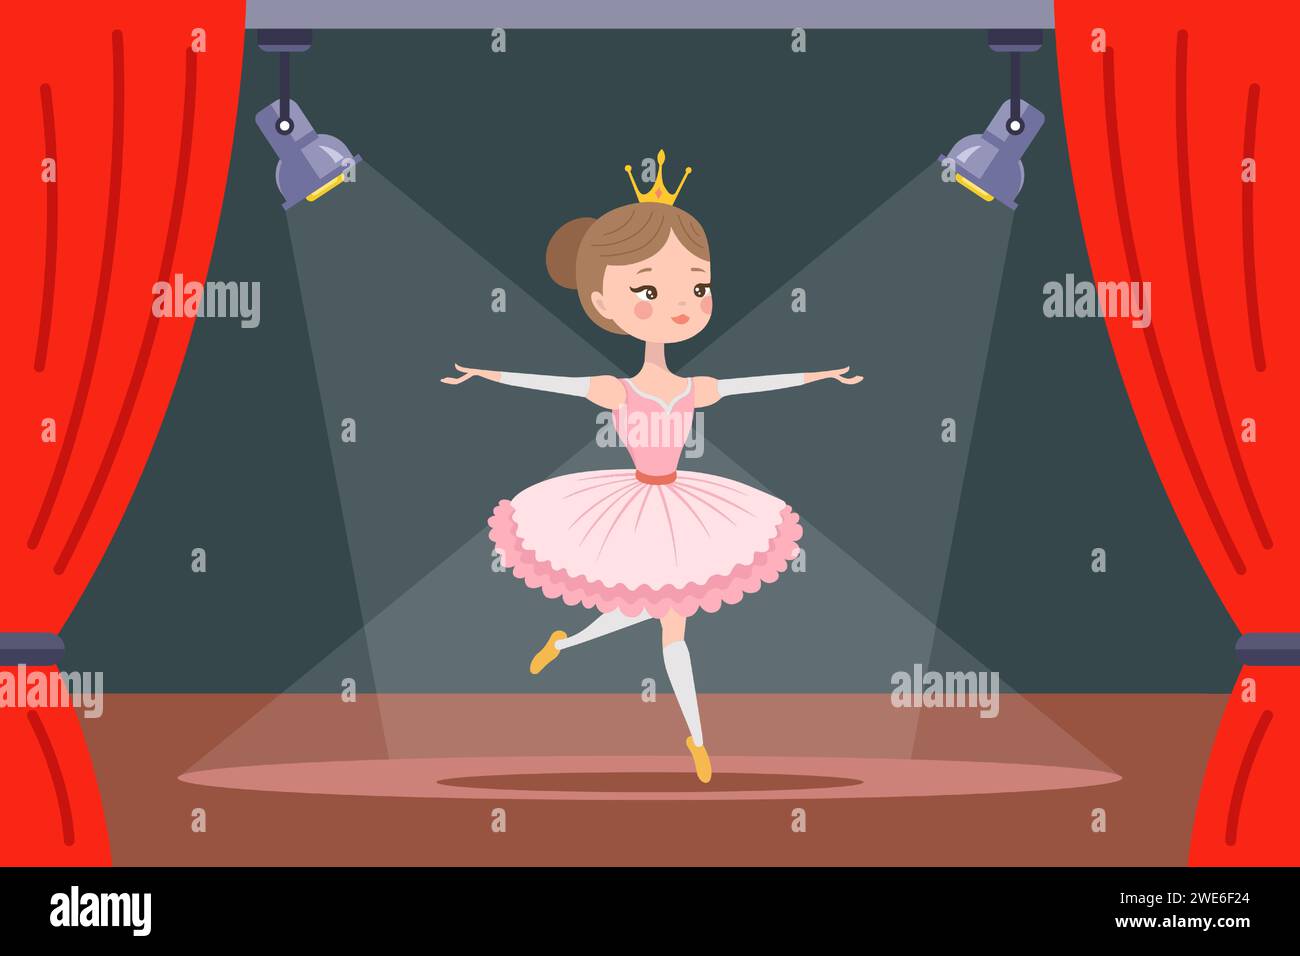 ballerine dans une robe rose sur scène. illustration vectorielle plate. Illustration de Vecteur